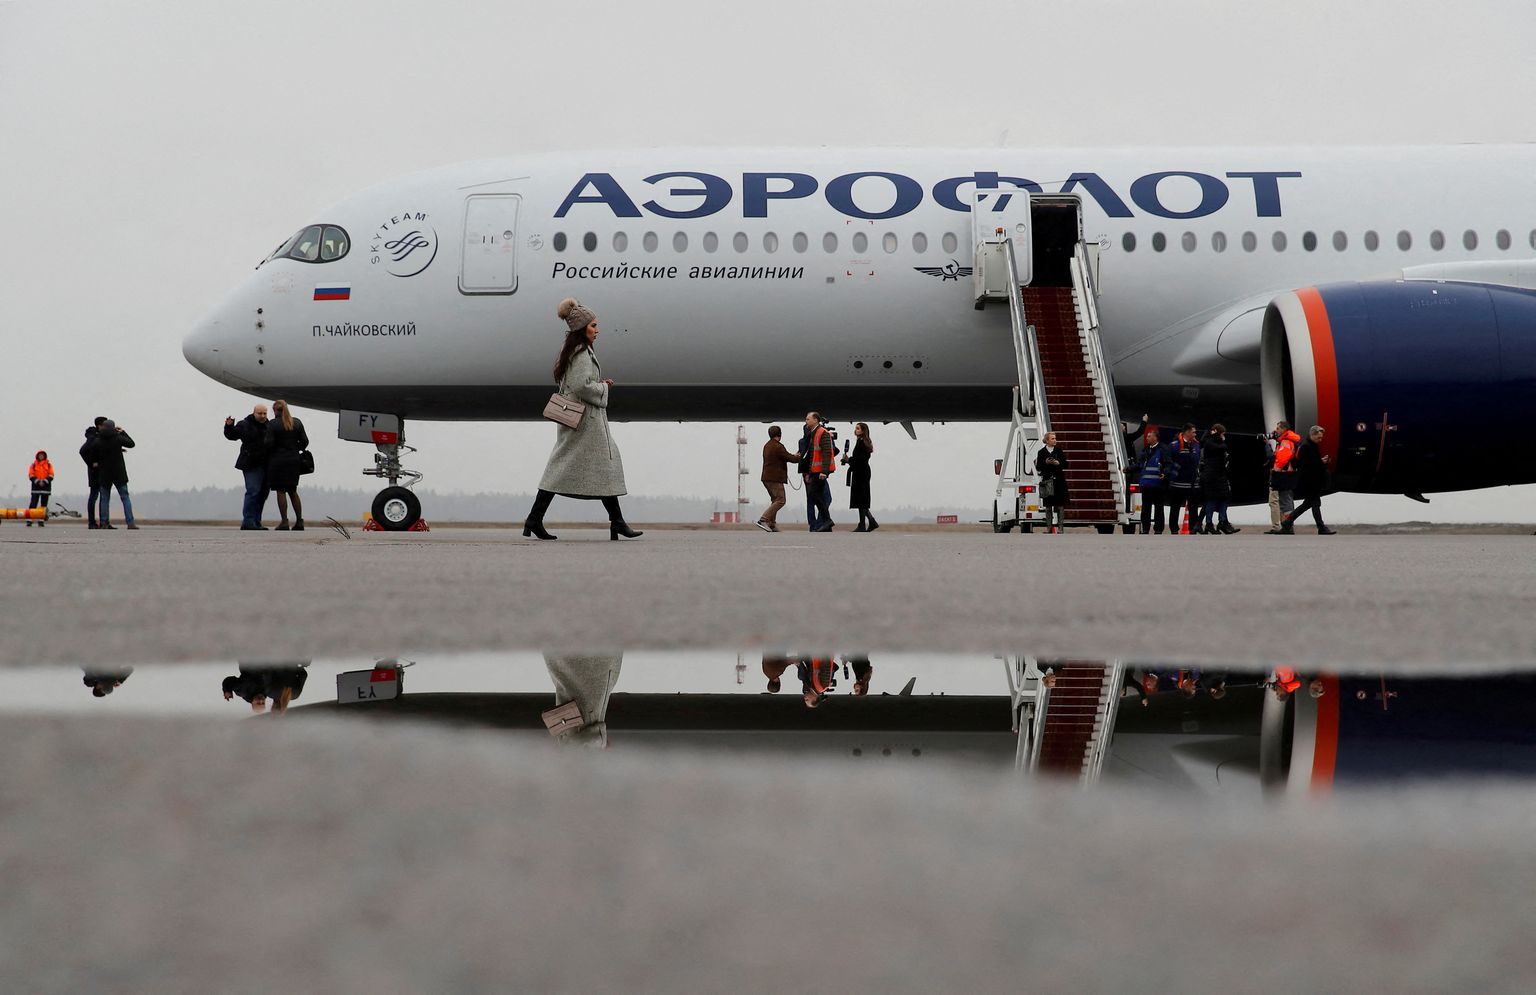 В марте 2020 года ведущая российская авиакомпания "Аэрофлот" получила новый самолет Airbus A350-900 западной сборки, который был торжественно представлен в аэропорту Шереметьево. Теперь запчасти для самолетов, взятых у лизинговых компаний, приходится искать с других самолетов, снятых с эксплуатации, так как из-за санкций их нельзя купить официально.